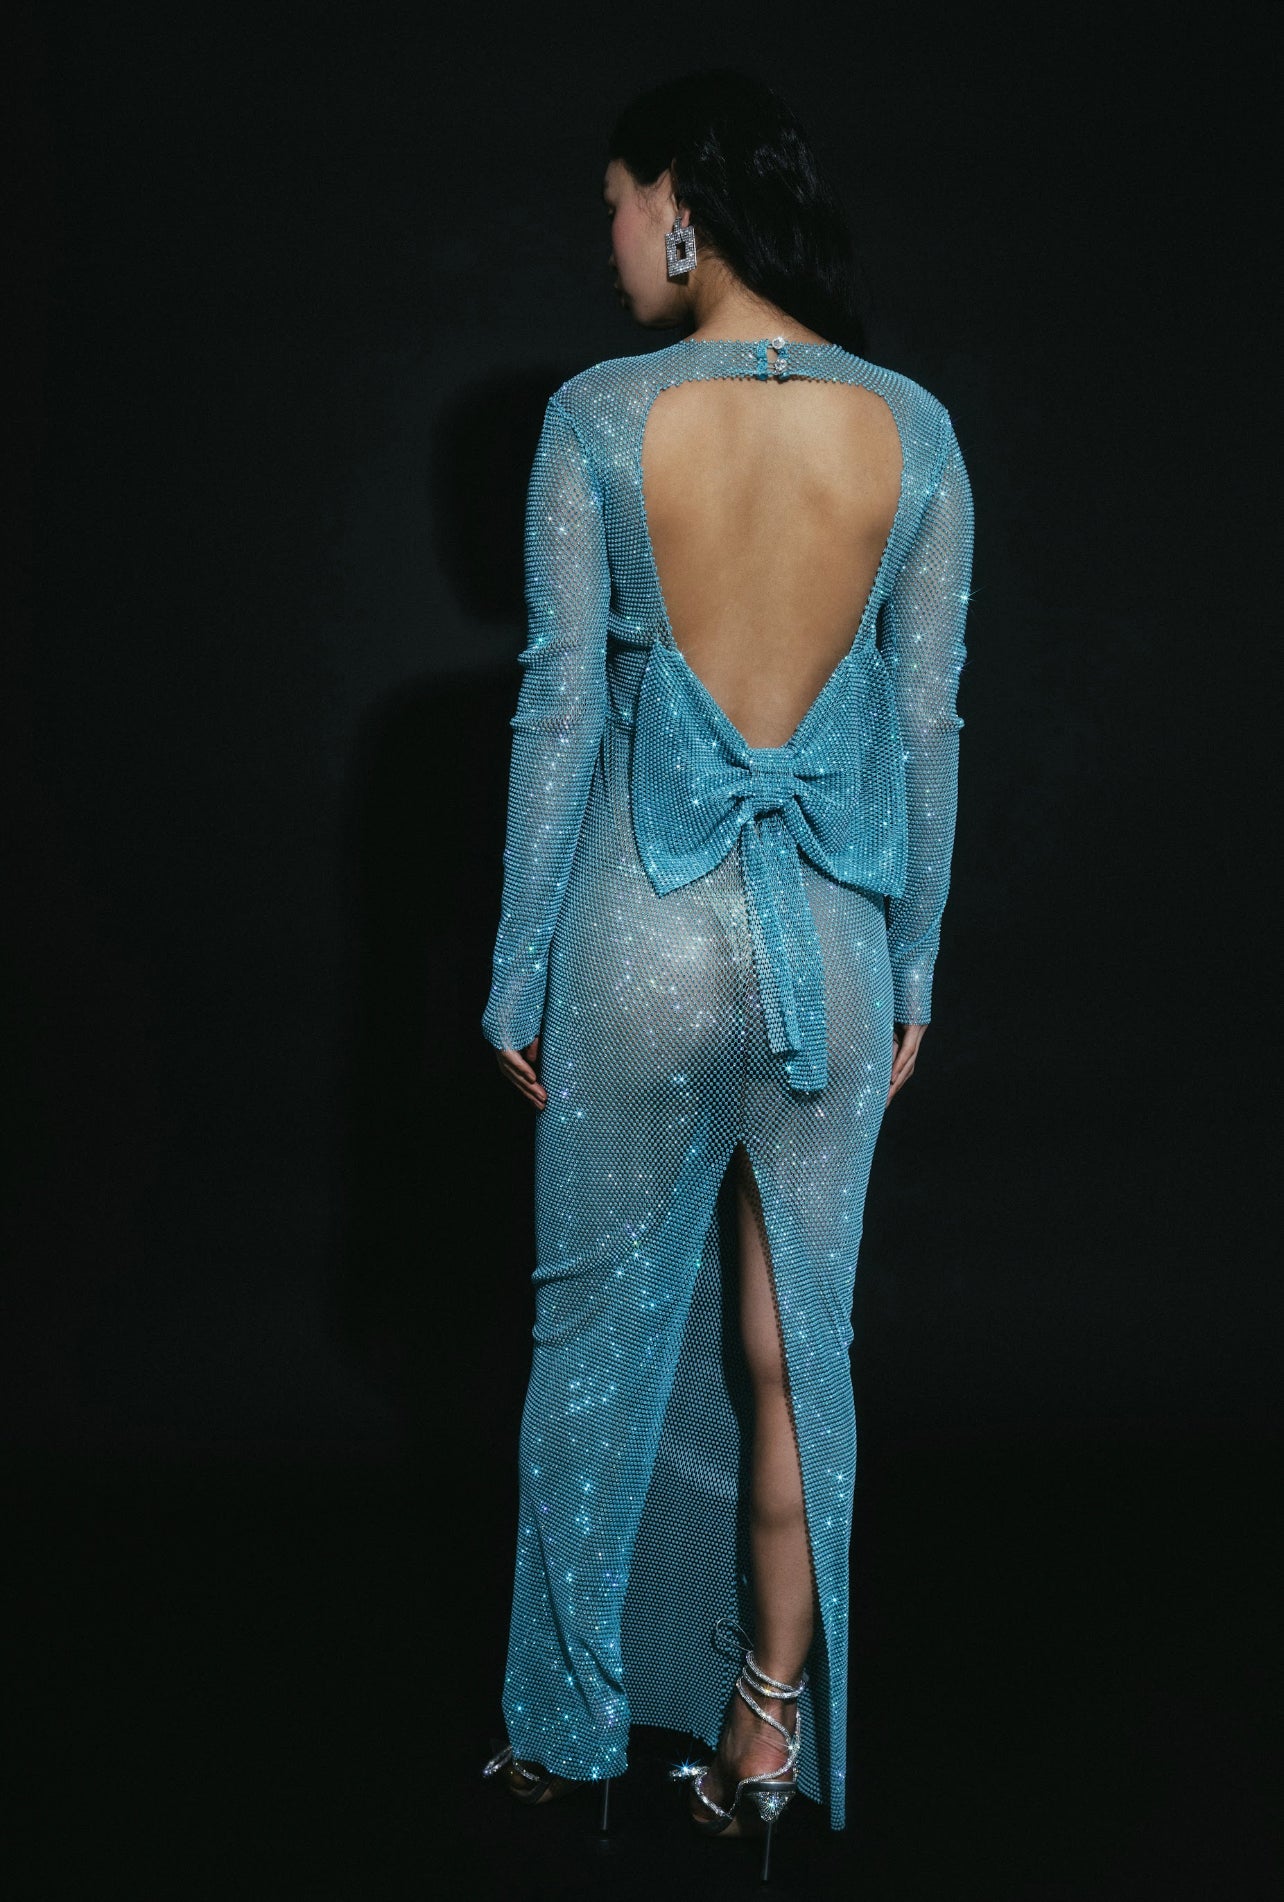 SANTA Sparkle Maxi Dress with Bow - Blue